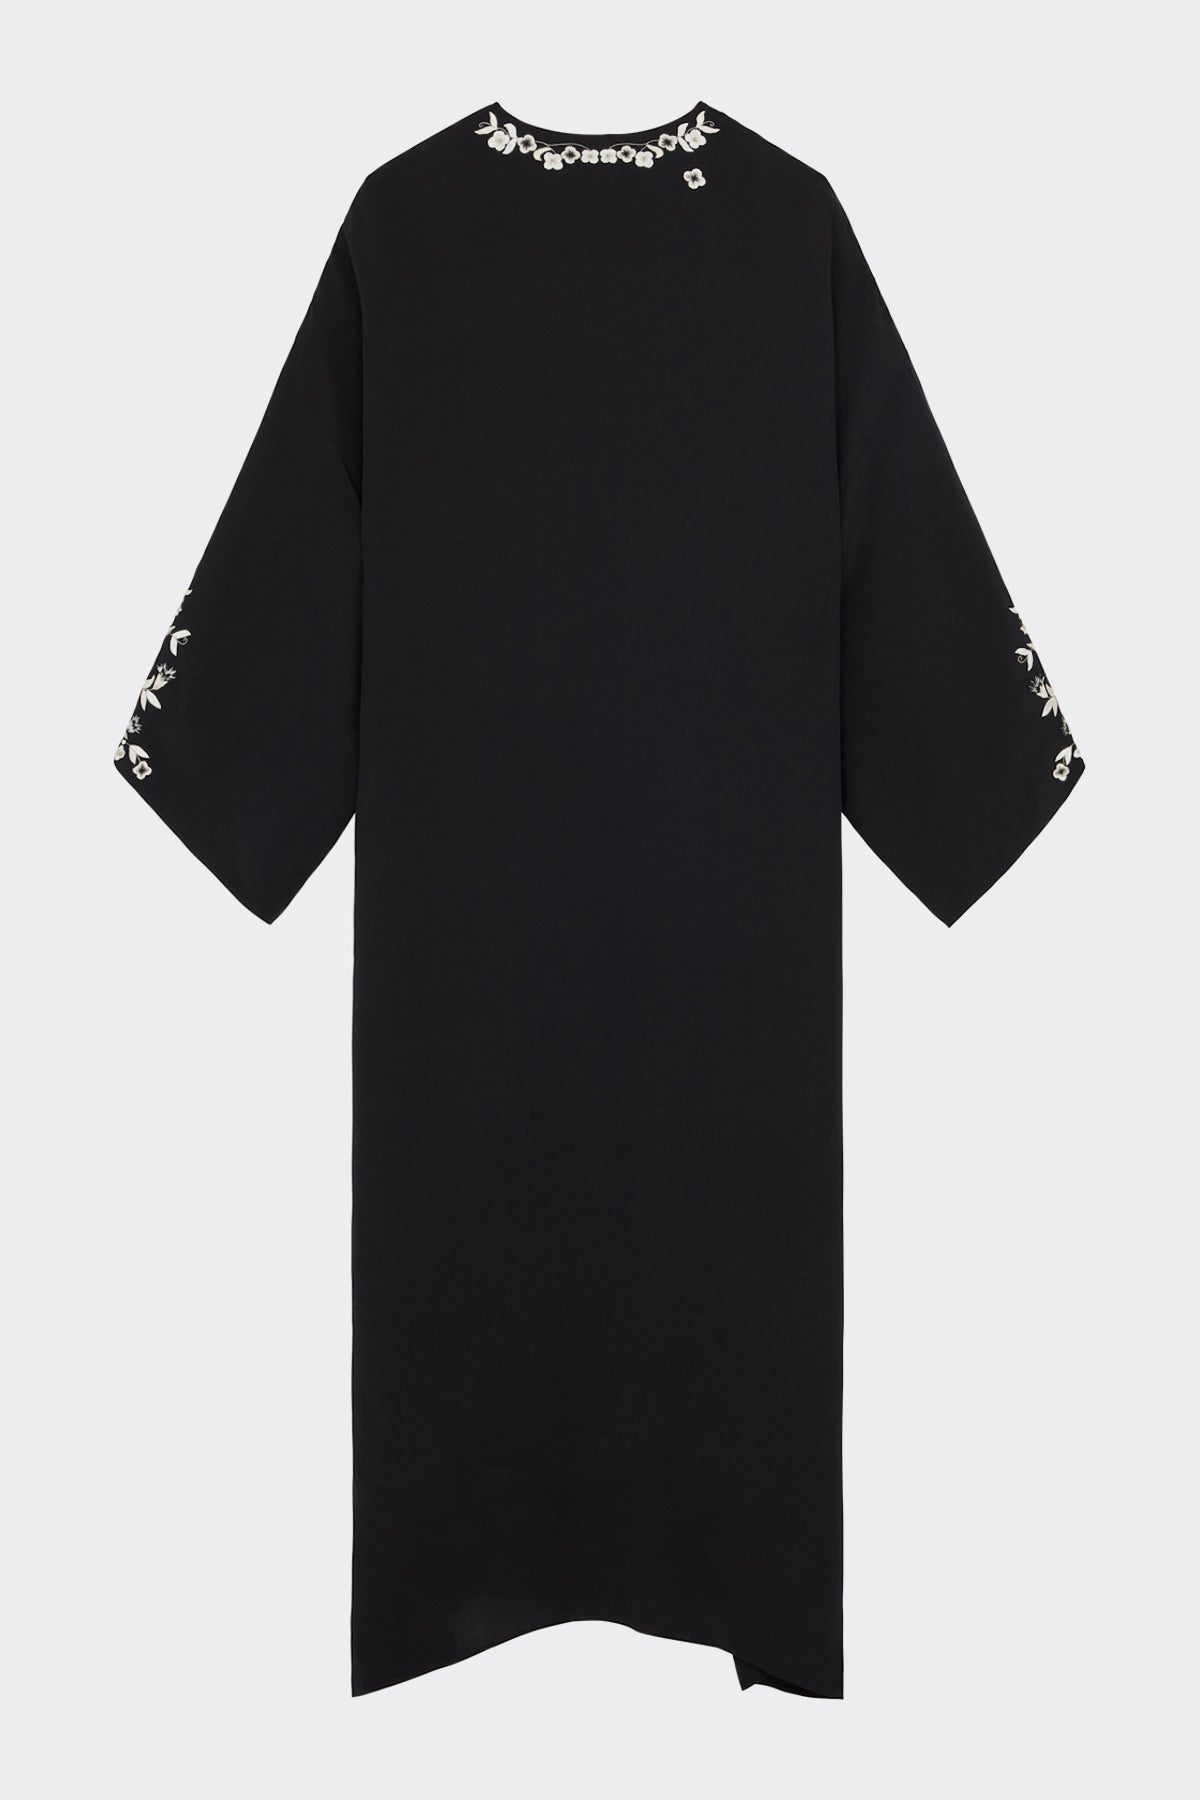 Charlotte Bis Kaftan Dress in Black| Noon by Noor